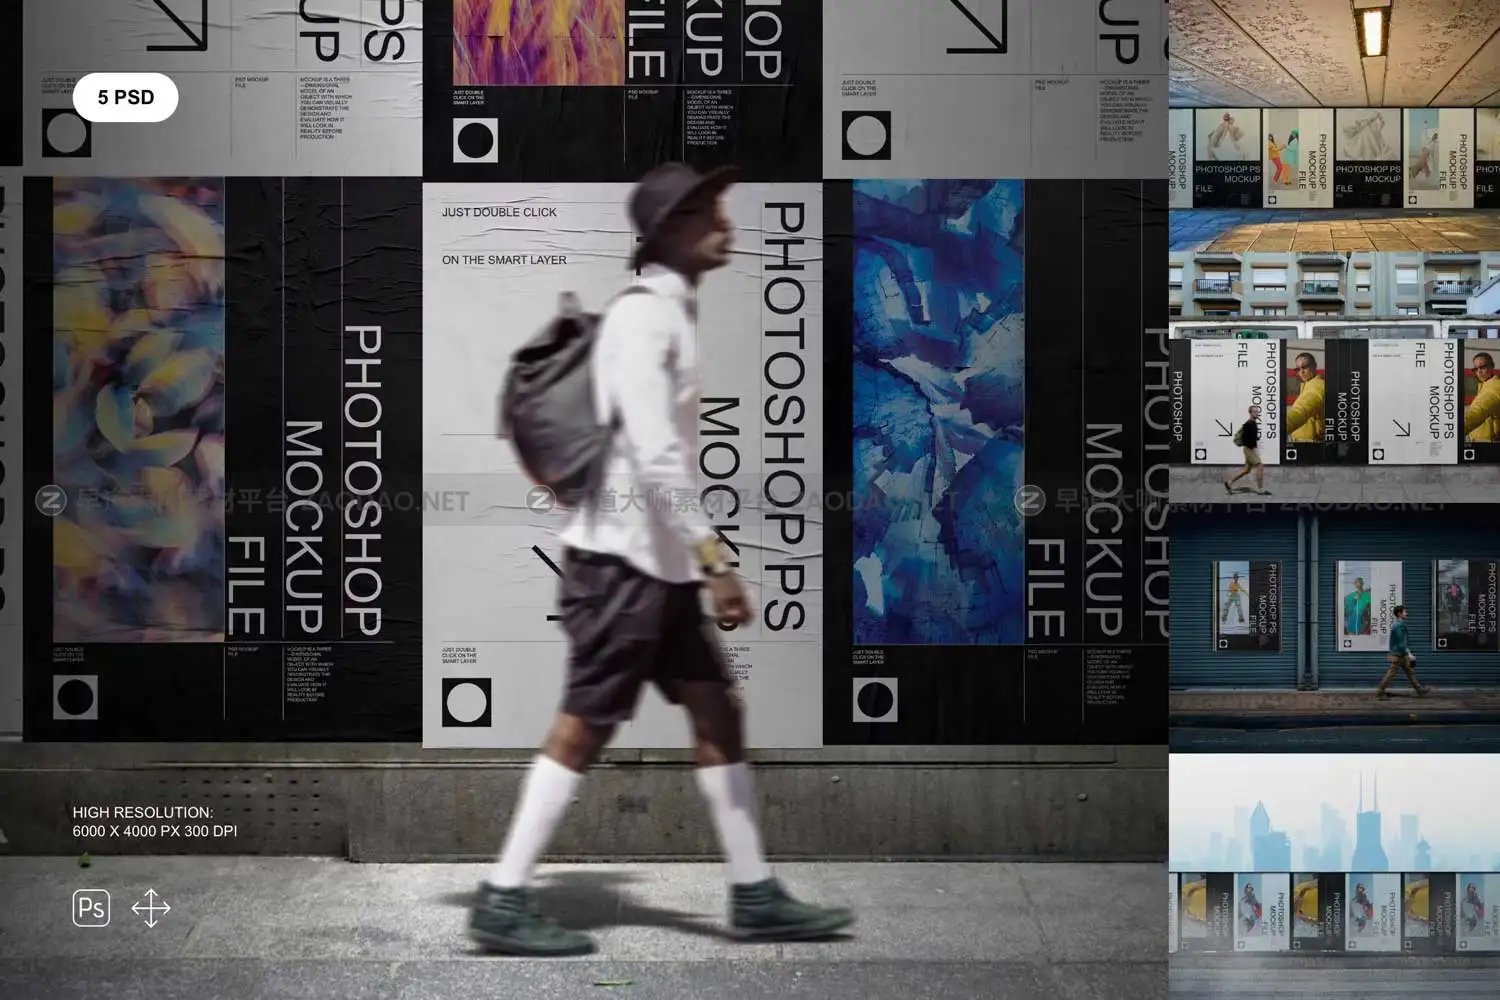 复古褶皱城市街头墙贴海报广告牌设计展示贴图PSD样机模板 Street Posters Mockup Set插图